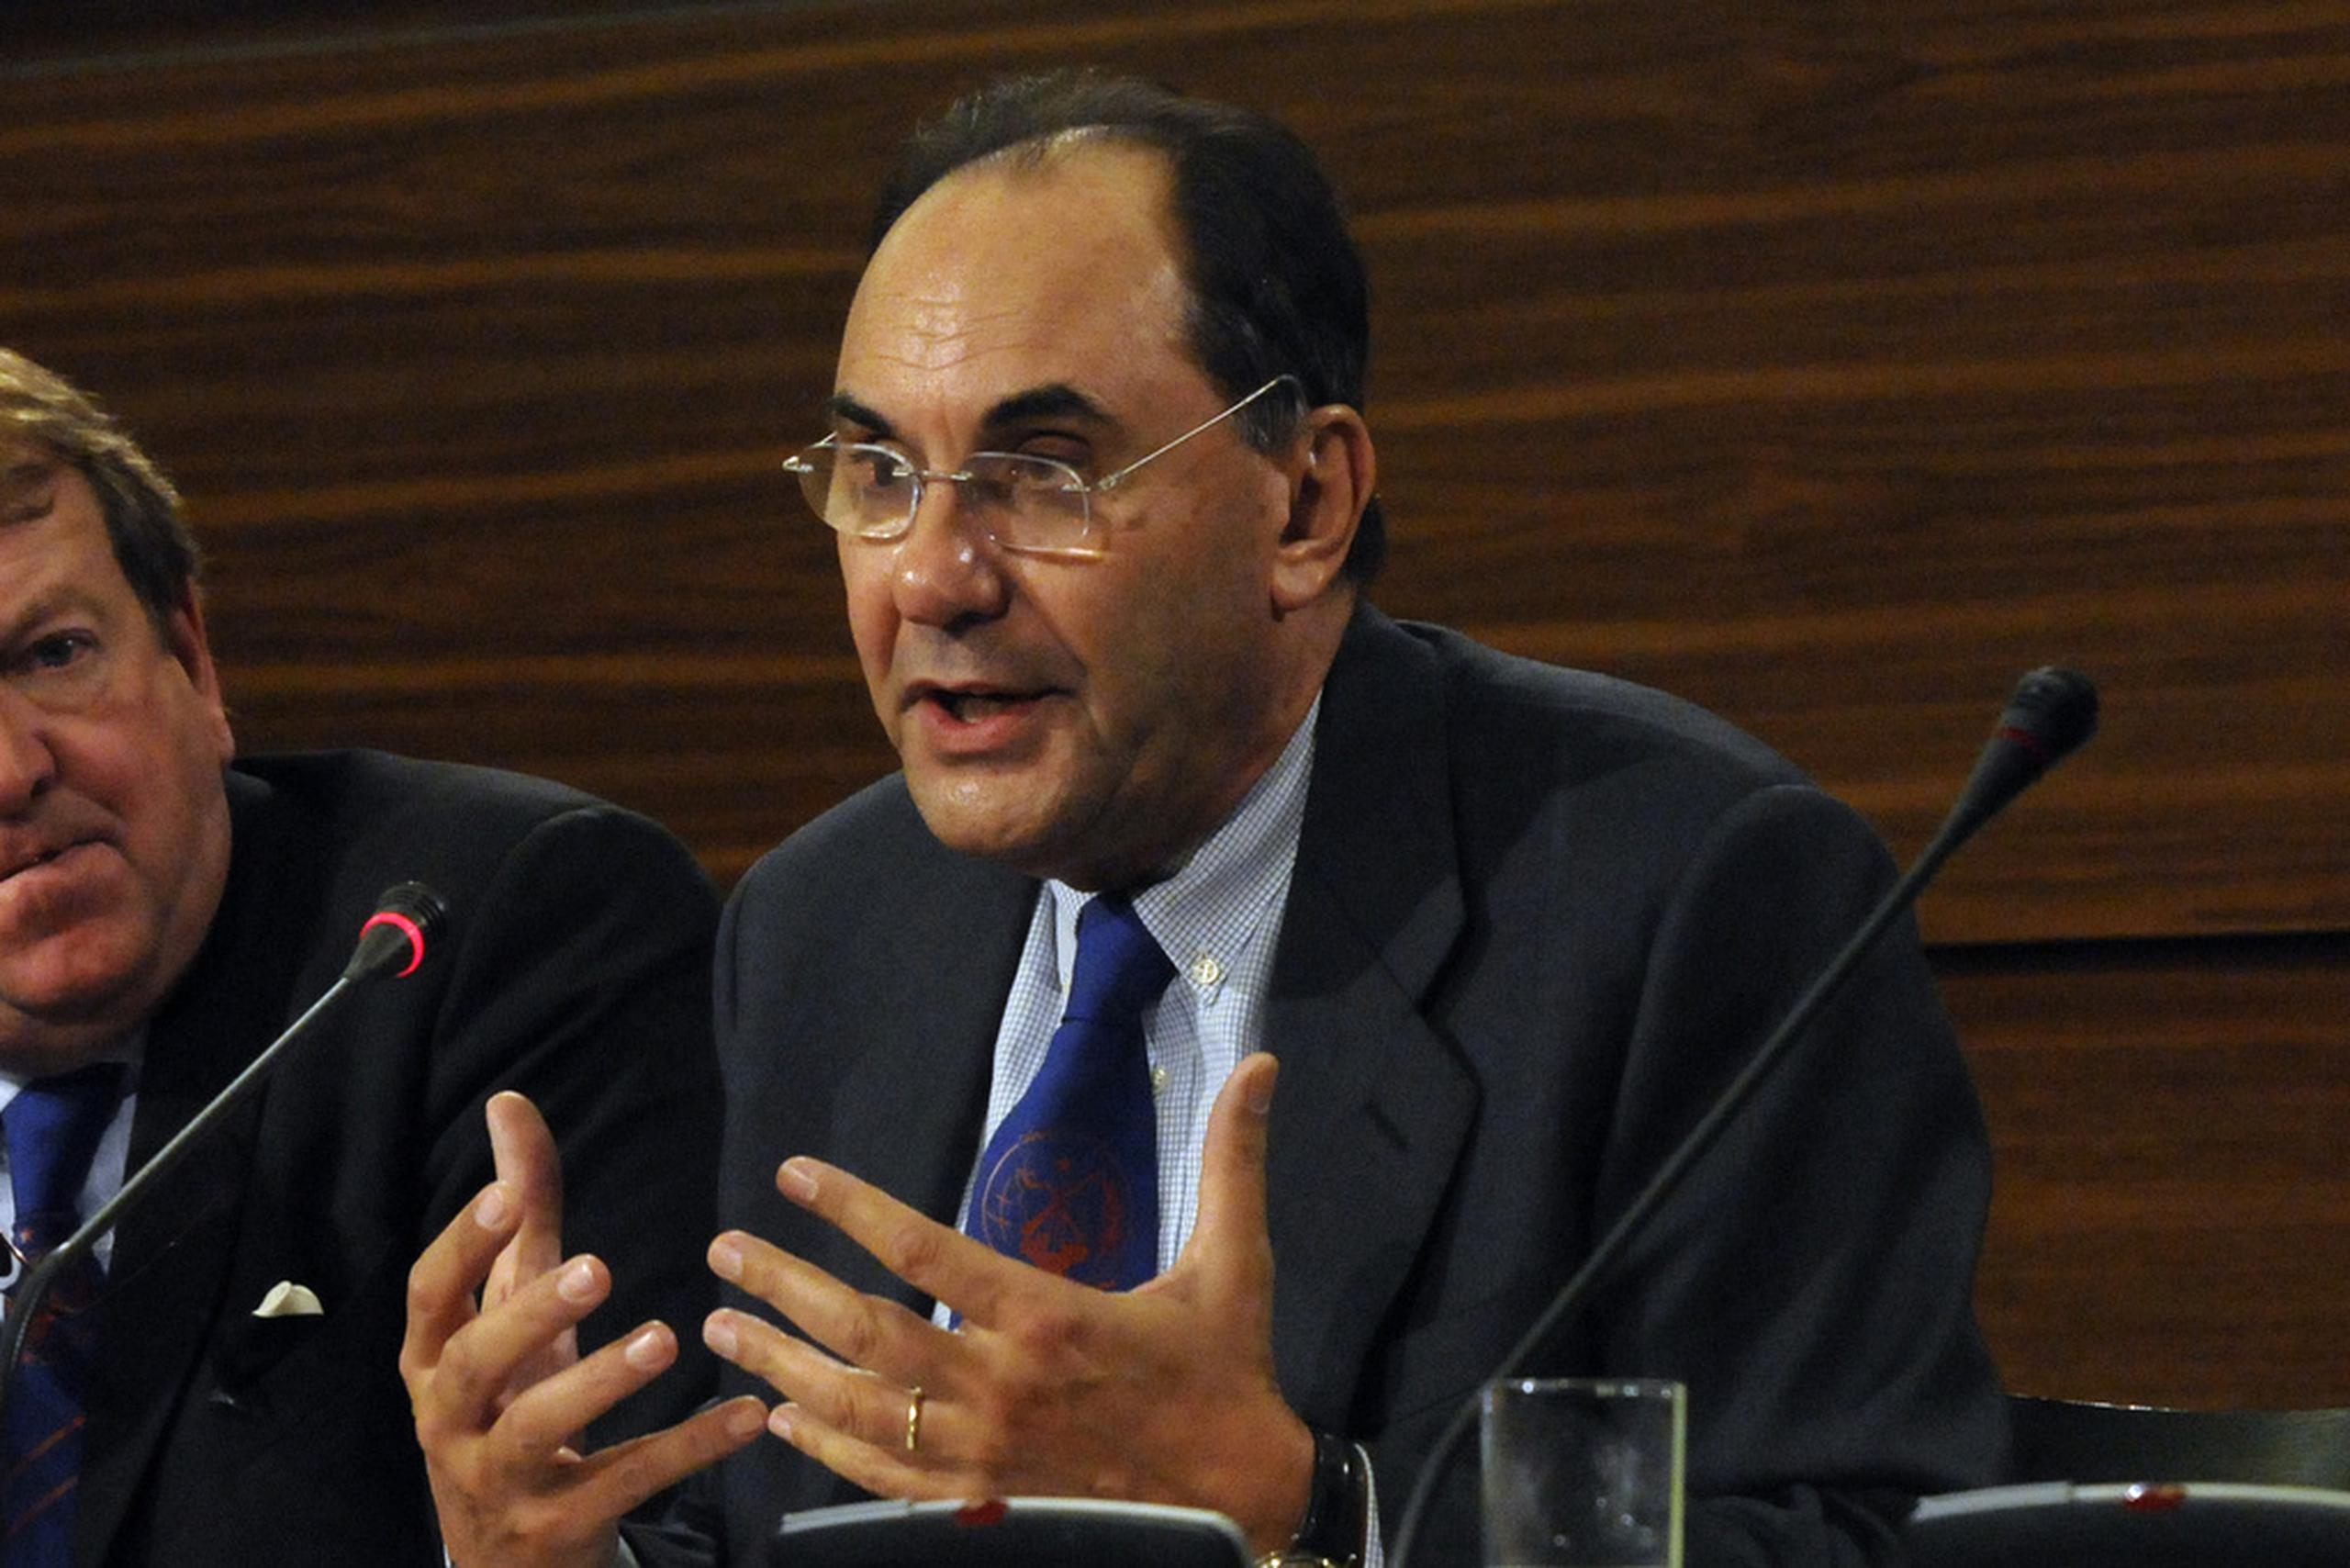 Alejo Vidal-Quadras presidió el partido conservador en la región española de Cataluña en la década de 1990 y luego fue eurodiputado hasta 2014, tras lo que pasó brevemente por el partido español de extrema derecha Vox.